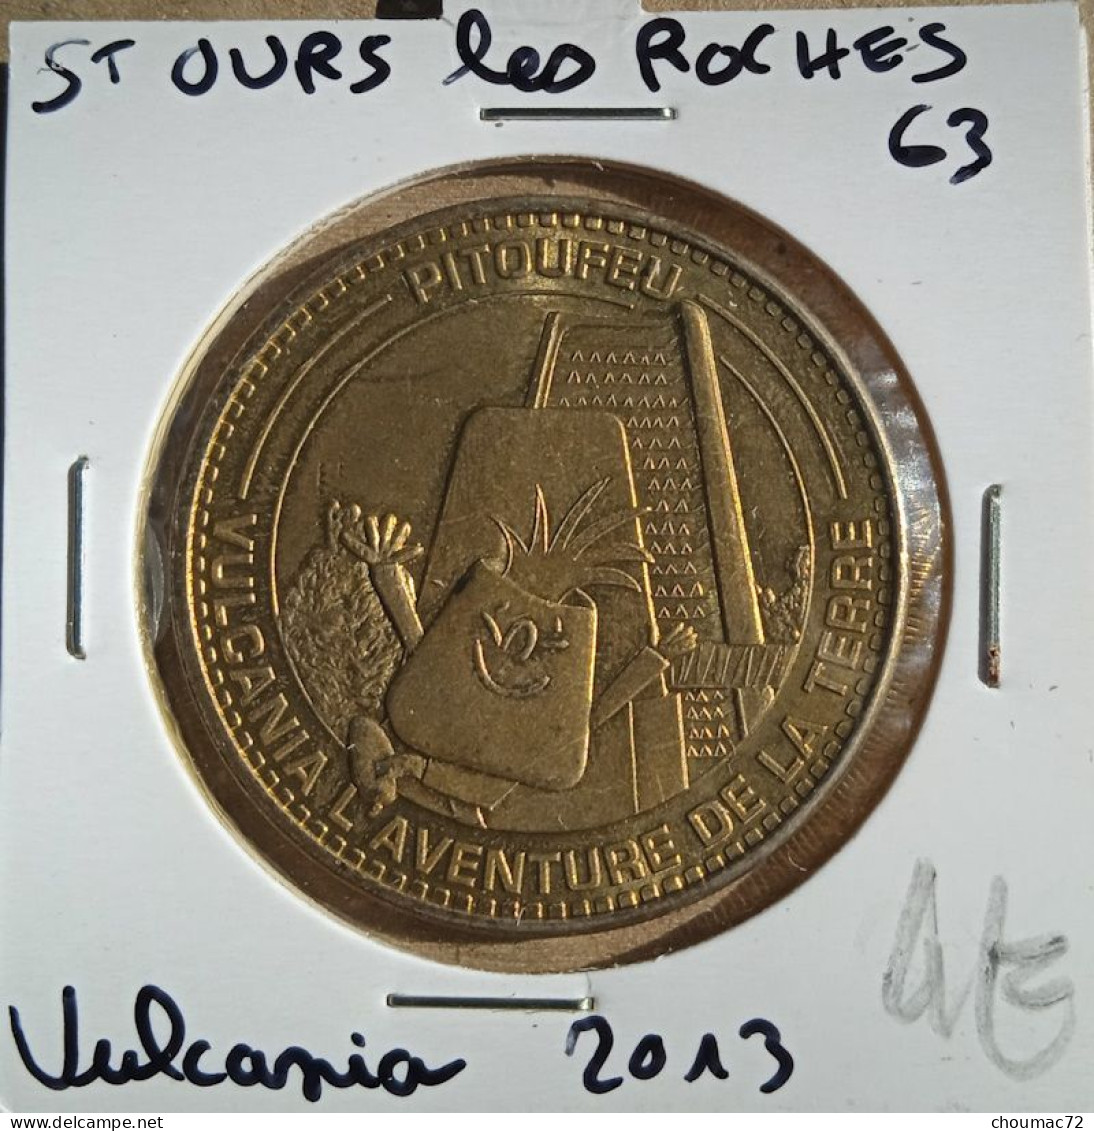 175, Monnaie De Paris 2013 - Jeton Touristique - St Ours Les Roches Vulcania (63) - 2013